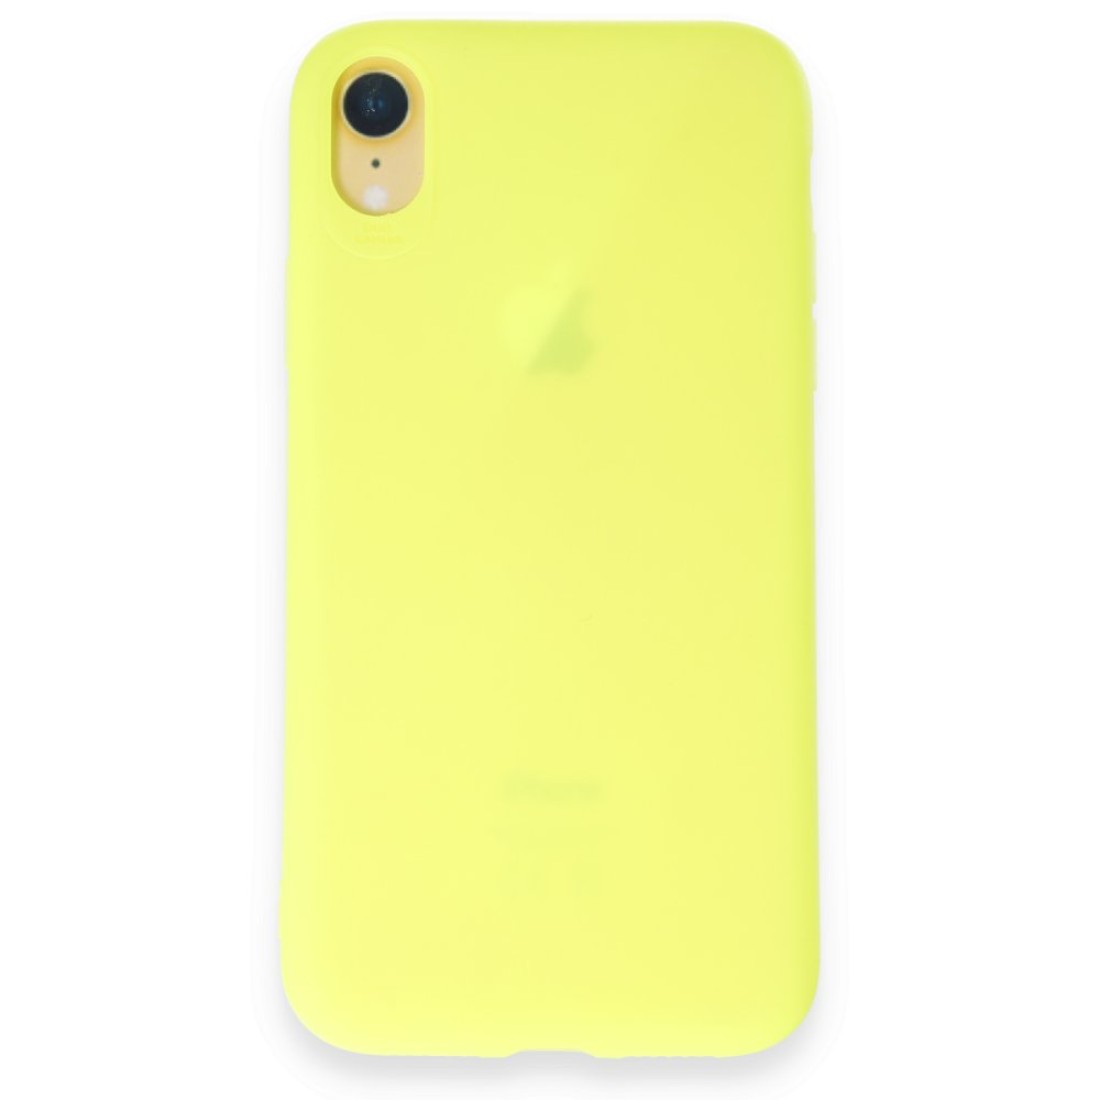 Apple iPhone XR Kılıf First Silikon - Parlak Yeşil